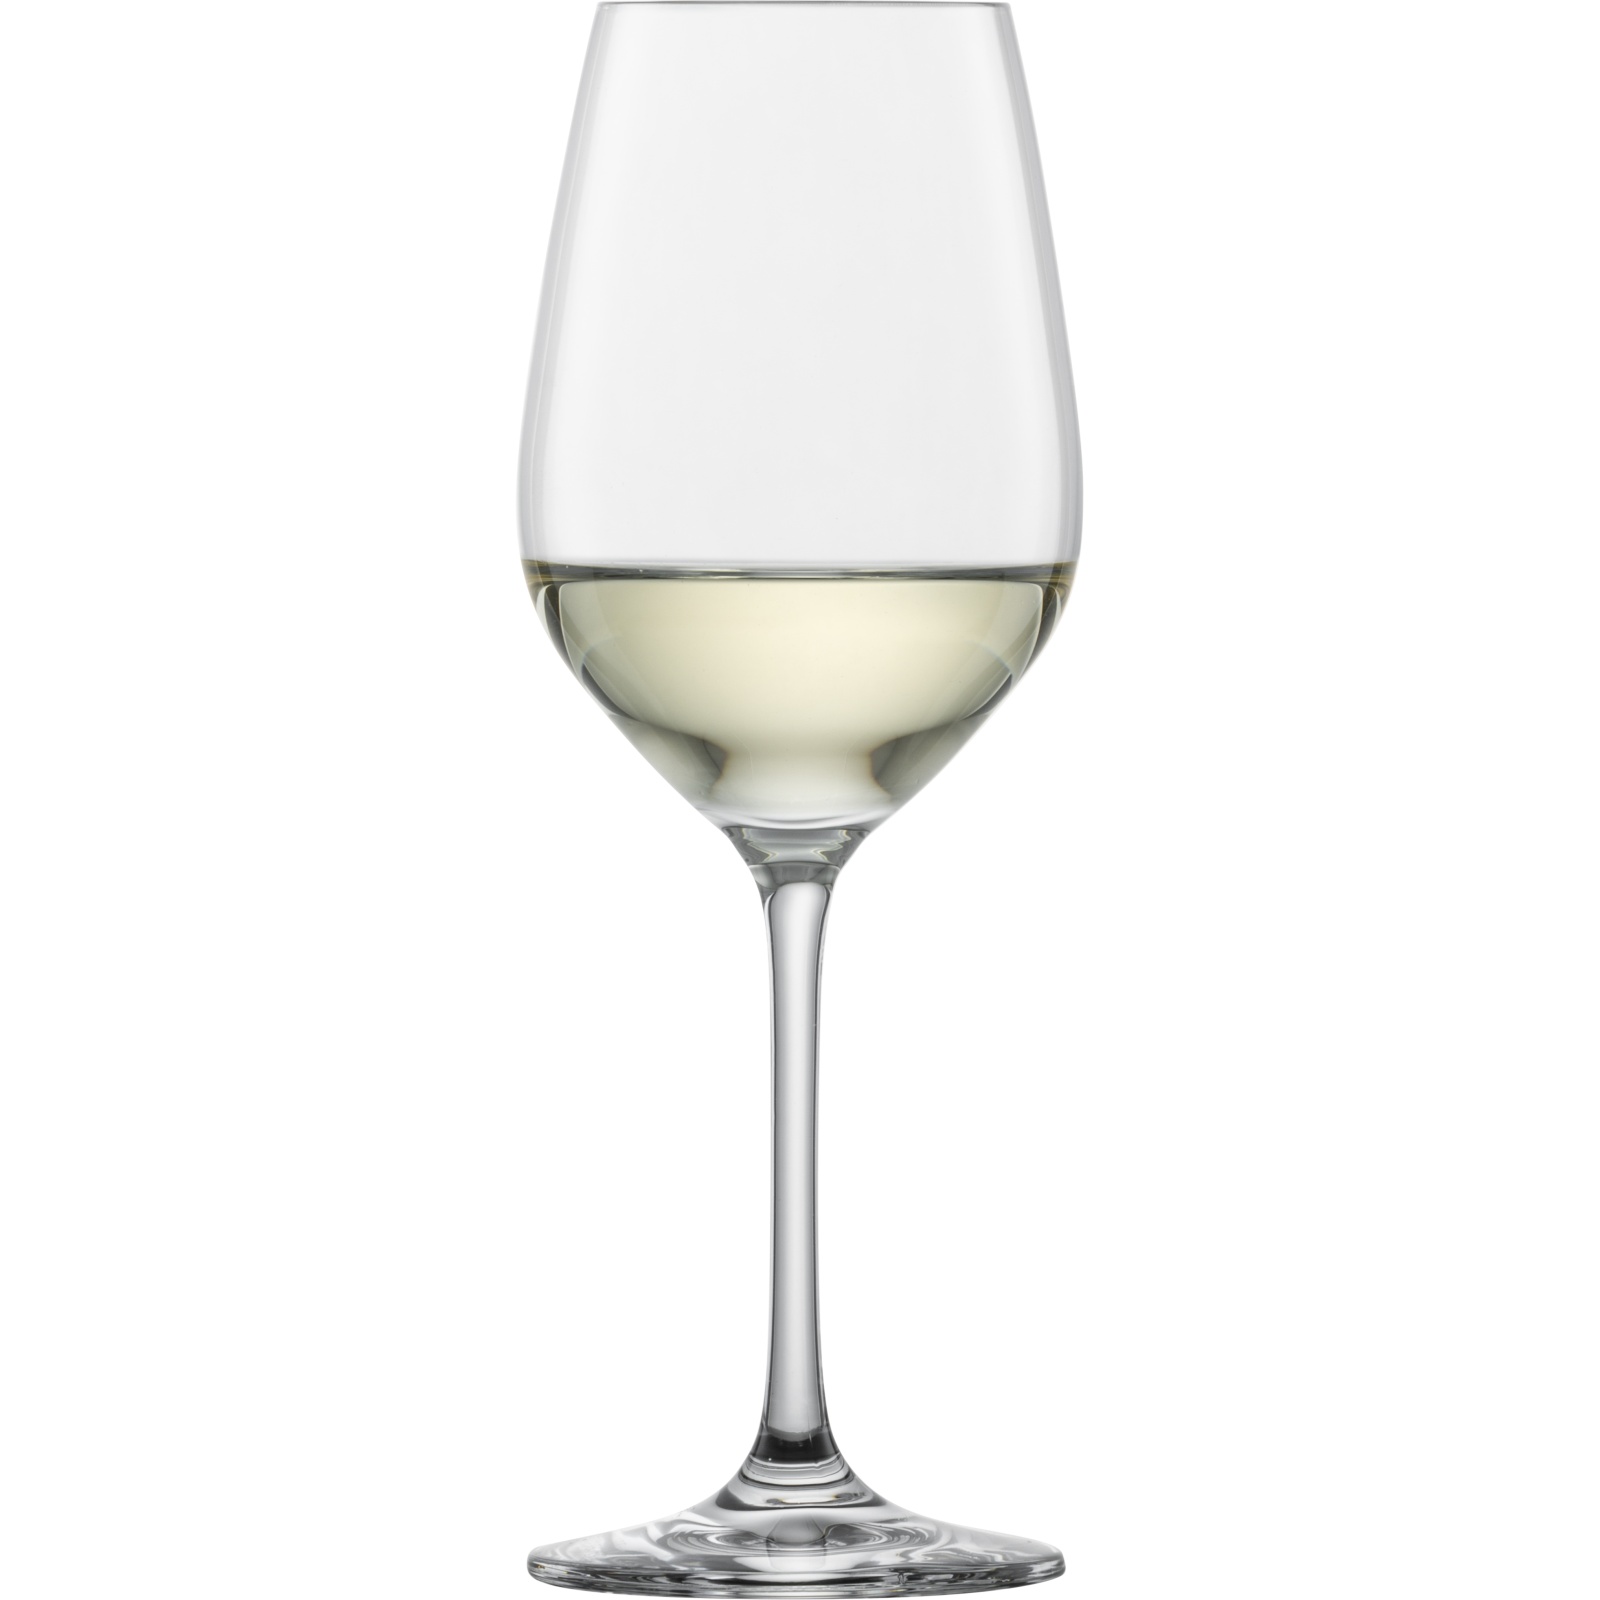 Schott Vina wijnglas online kopen? | Woldring